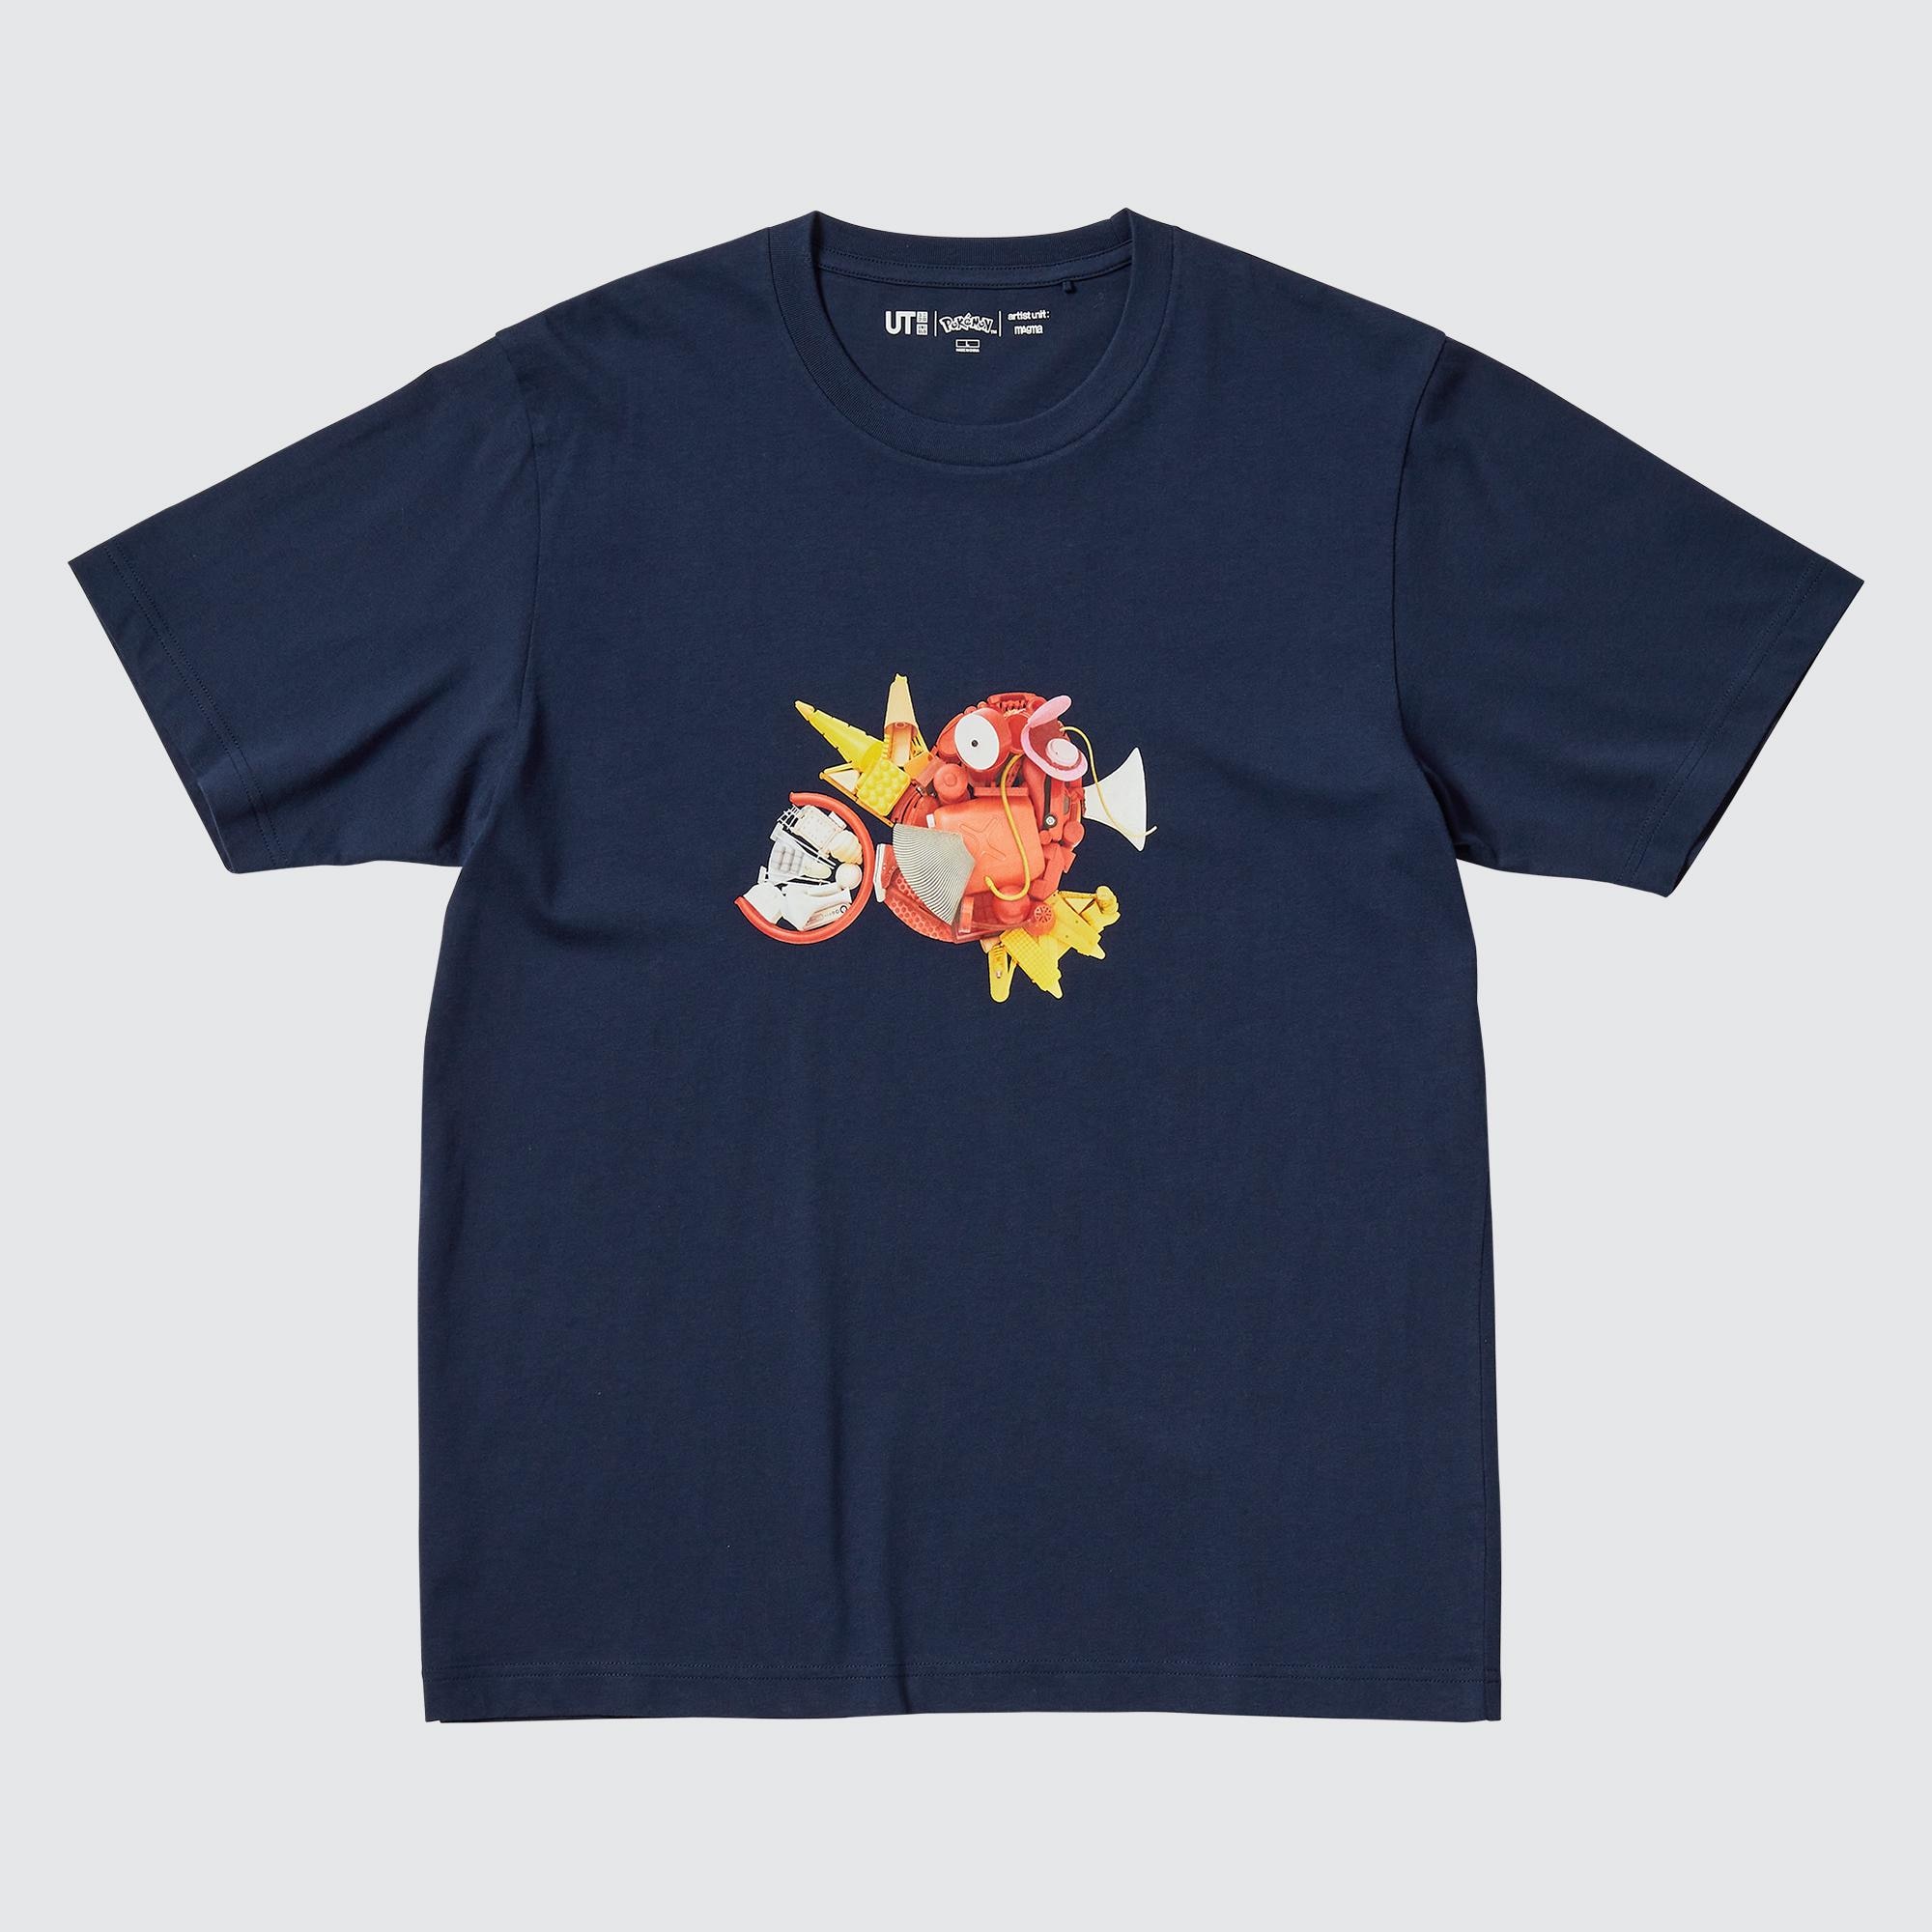 Zegenen Vervorming Tot ziens Pokémon UT (Short-Sleeve Graphic T-Shirt) | UNIQLO US